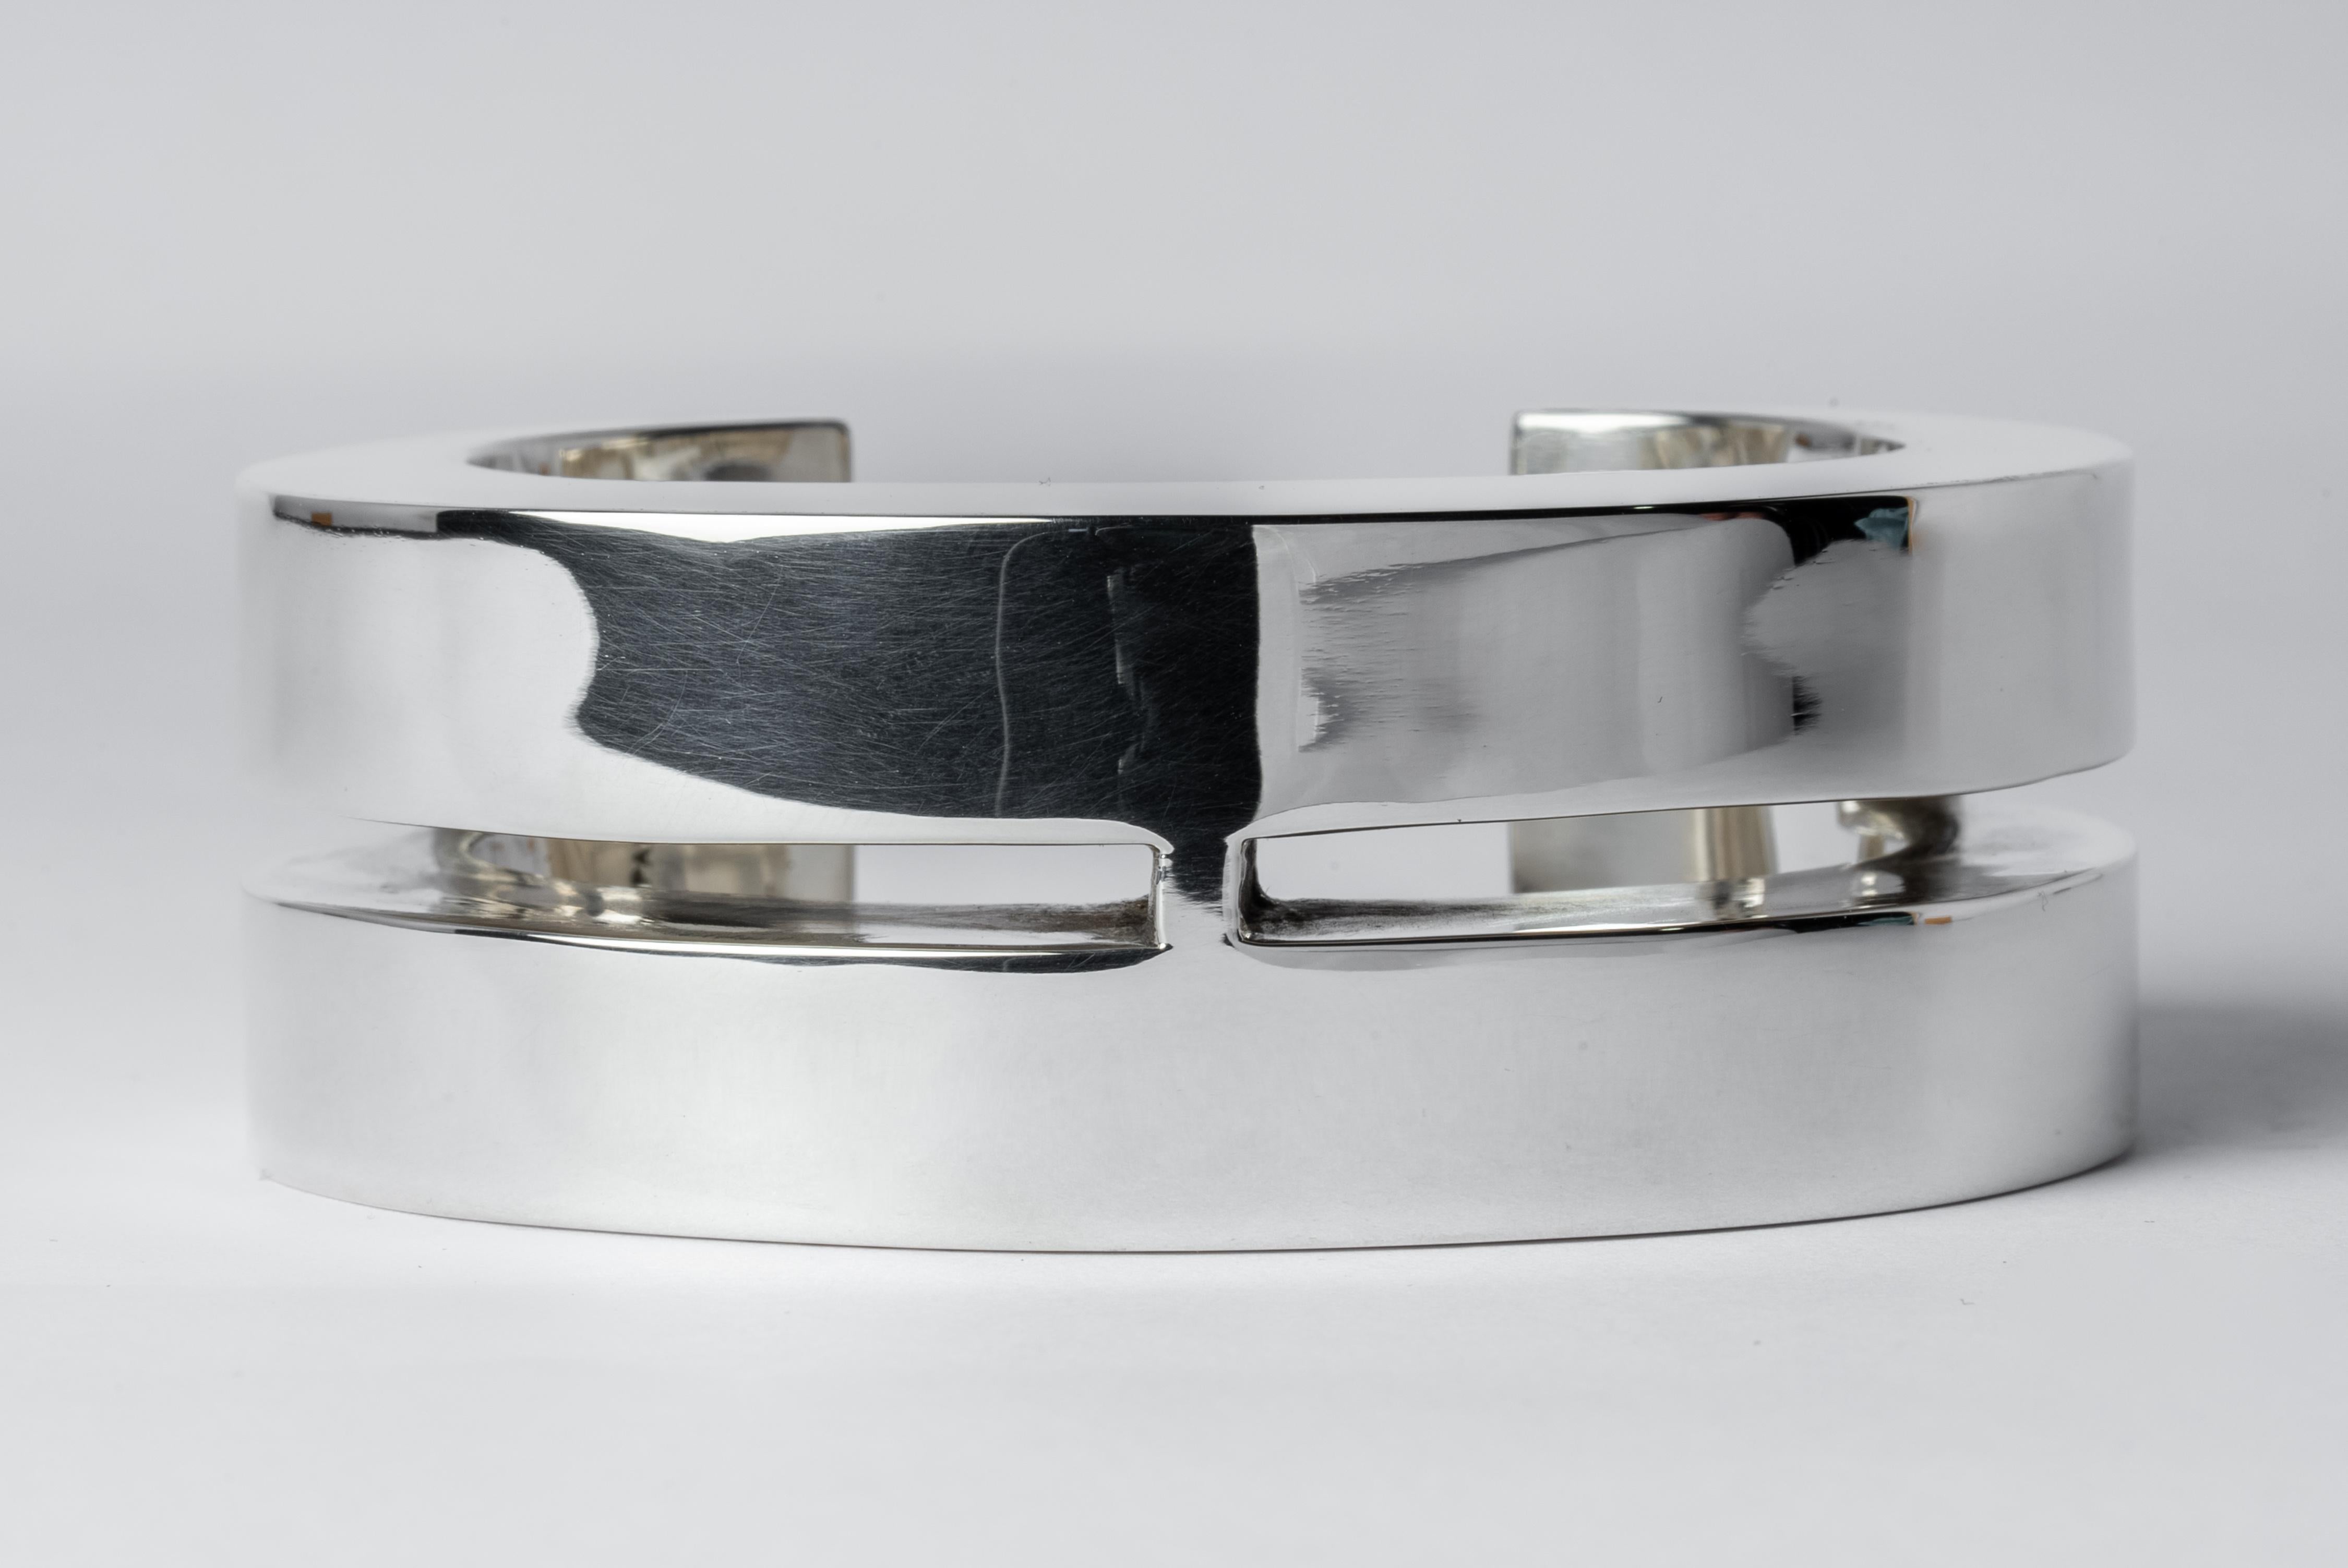 Armband aus poliertem Sterlingsilber. Dieses Stück ist zu 100 % von Hand aus Metallblech gefertigt, in Abschnitte geschnitten und zusammengelötet, um die hohle dreidimensionale Form zu bilden. Wenn es sich um Sterlingsilber handelt, wird das